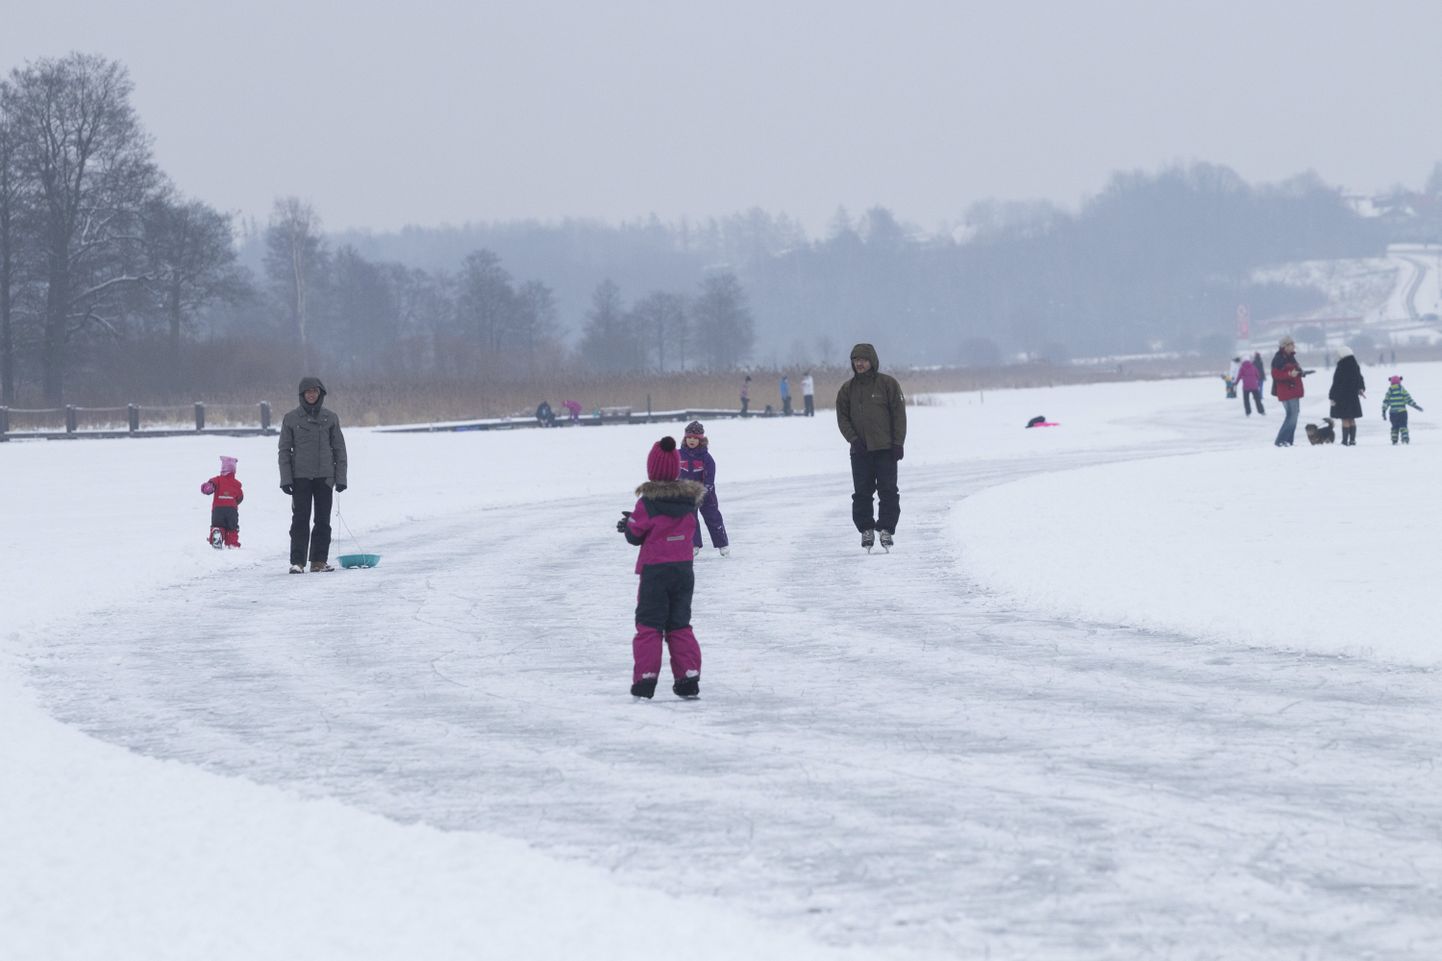 Talvine nädalavahetus kutsus Viljandi järvele suure hulga rahvast. Lisaks uisutamisele ja suusatamisele tunti seal rõõmu kelguga müttamisest või koeraga jalutamisest.